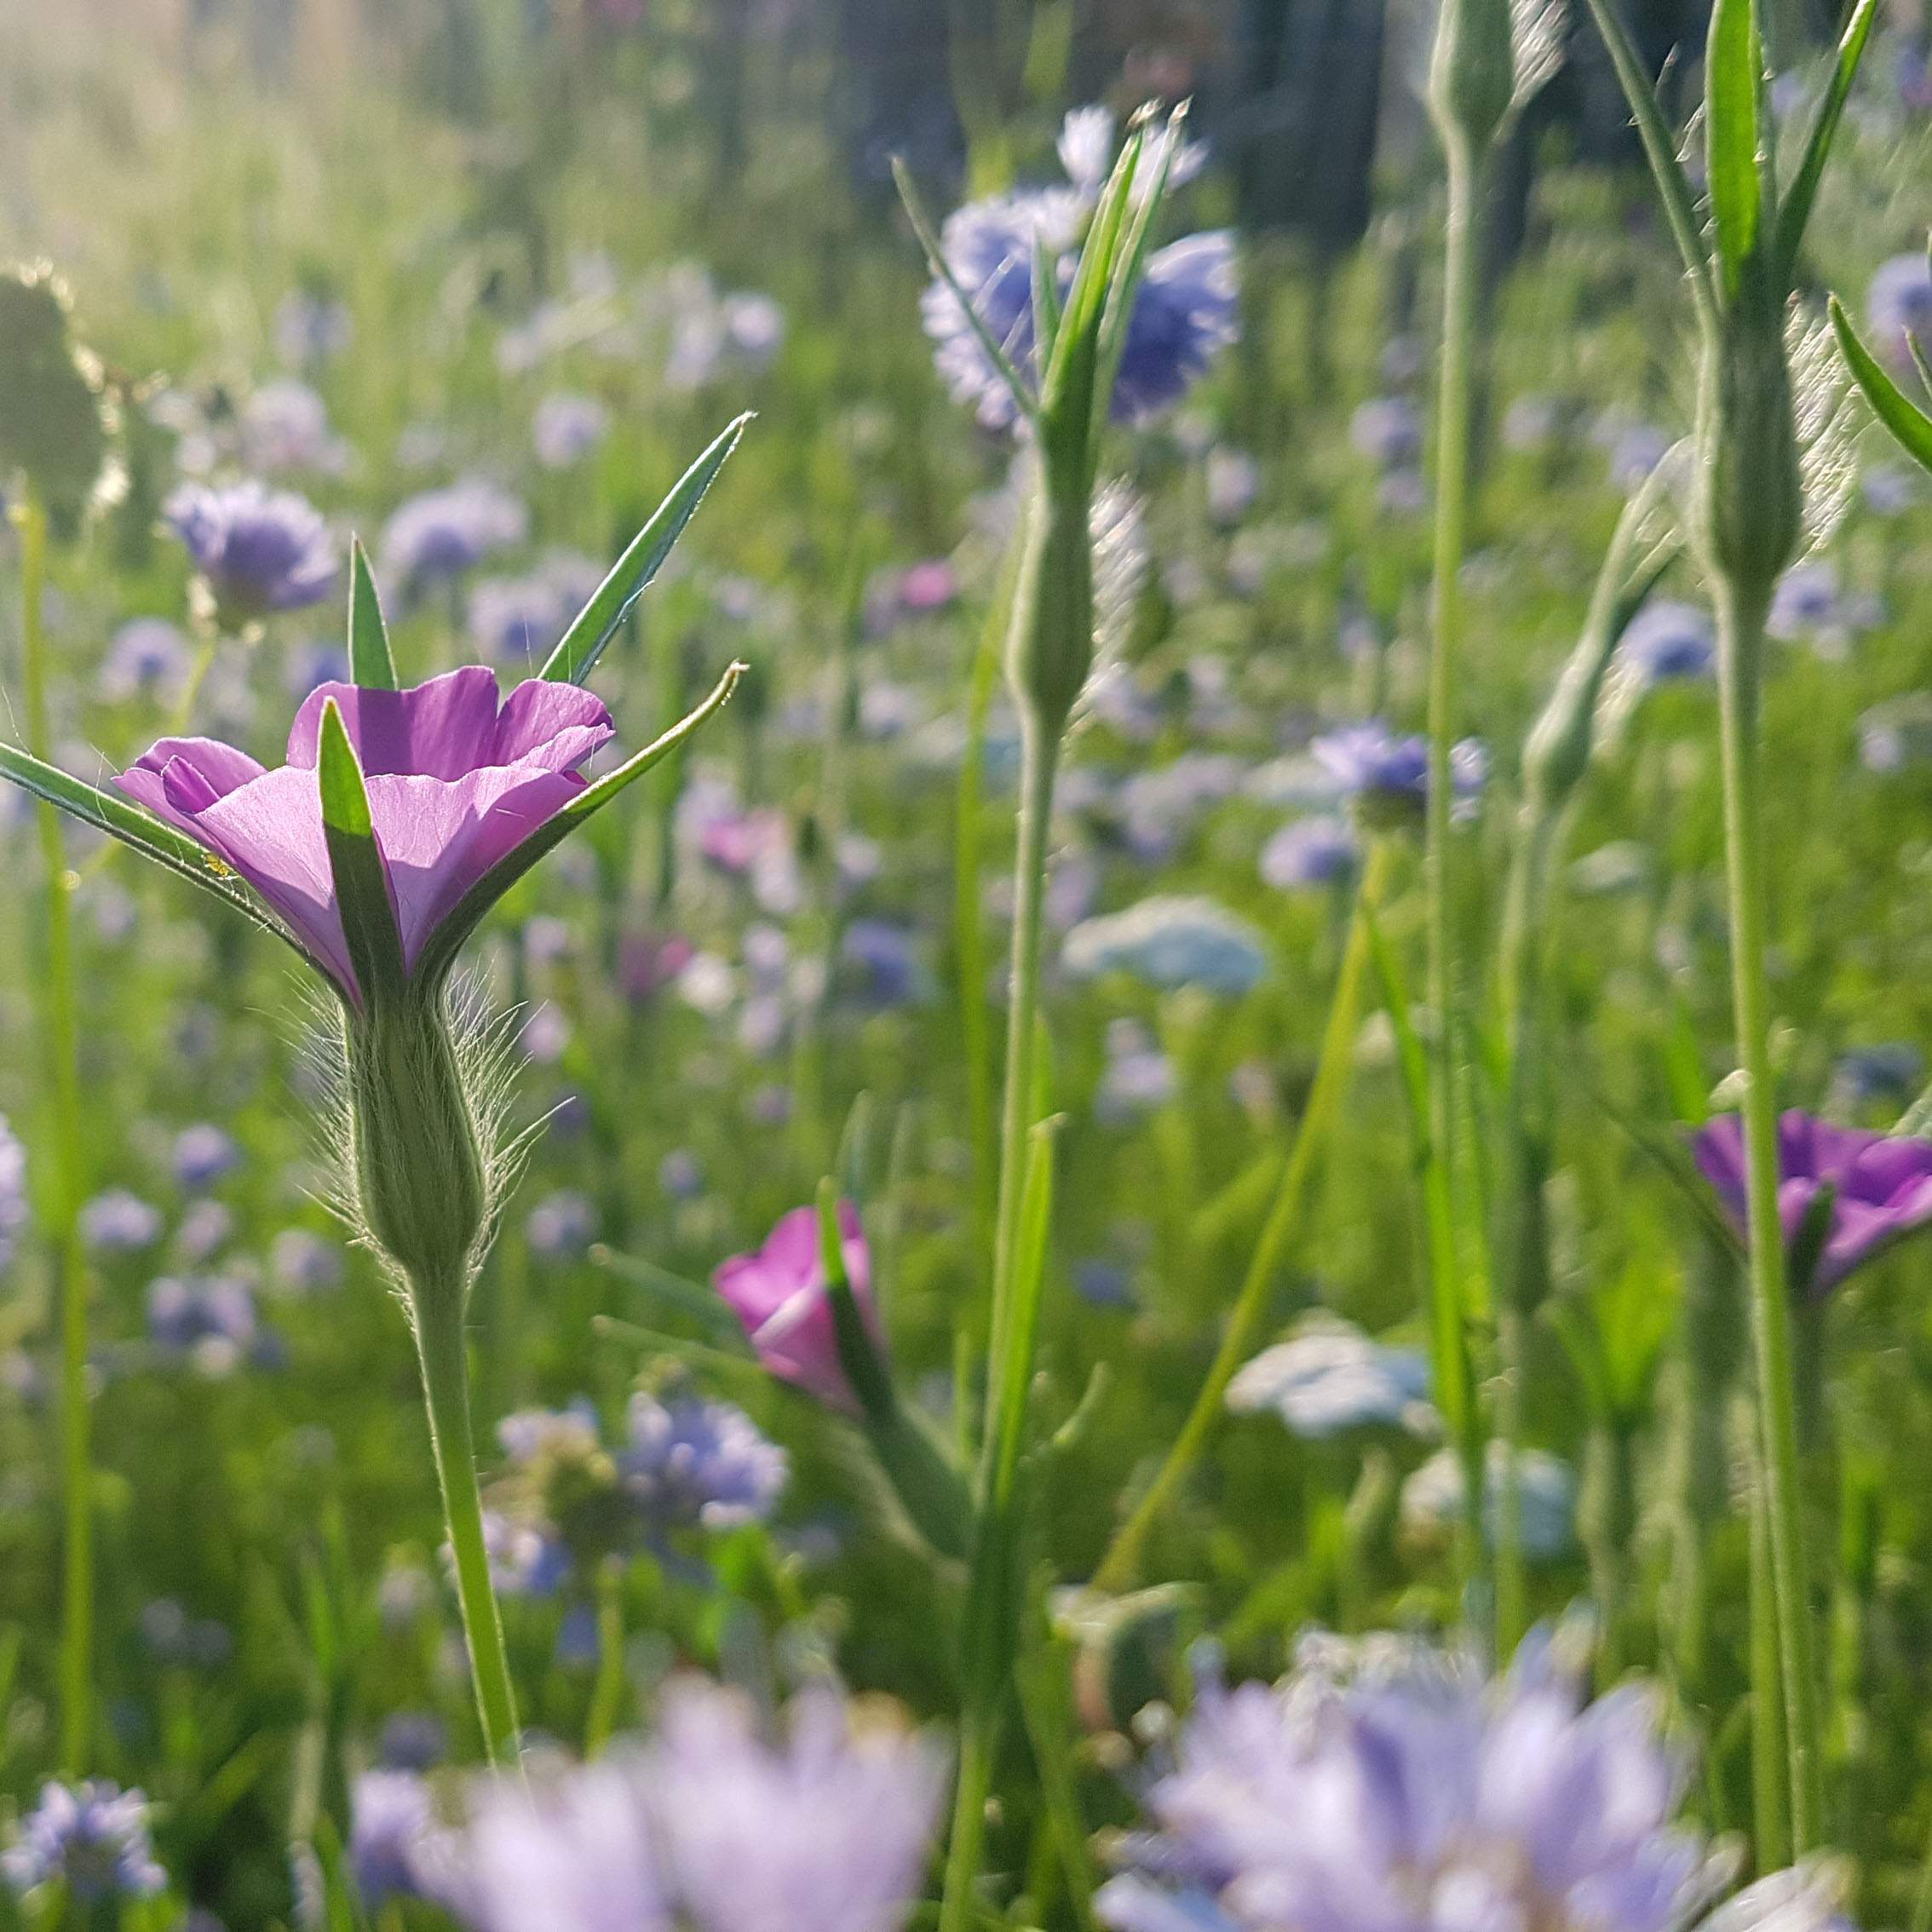 Plukgeluk zaaipakket: je eigen oase van bloemen en vlinders in blauw en paars